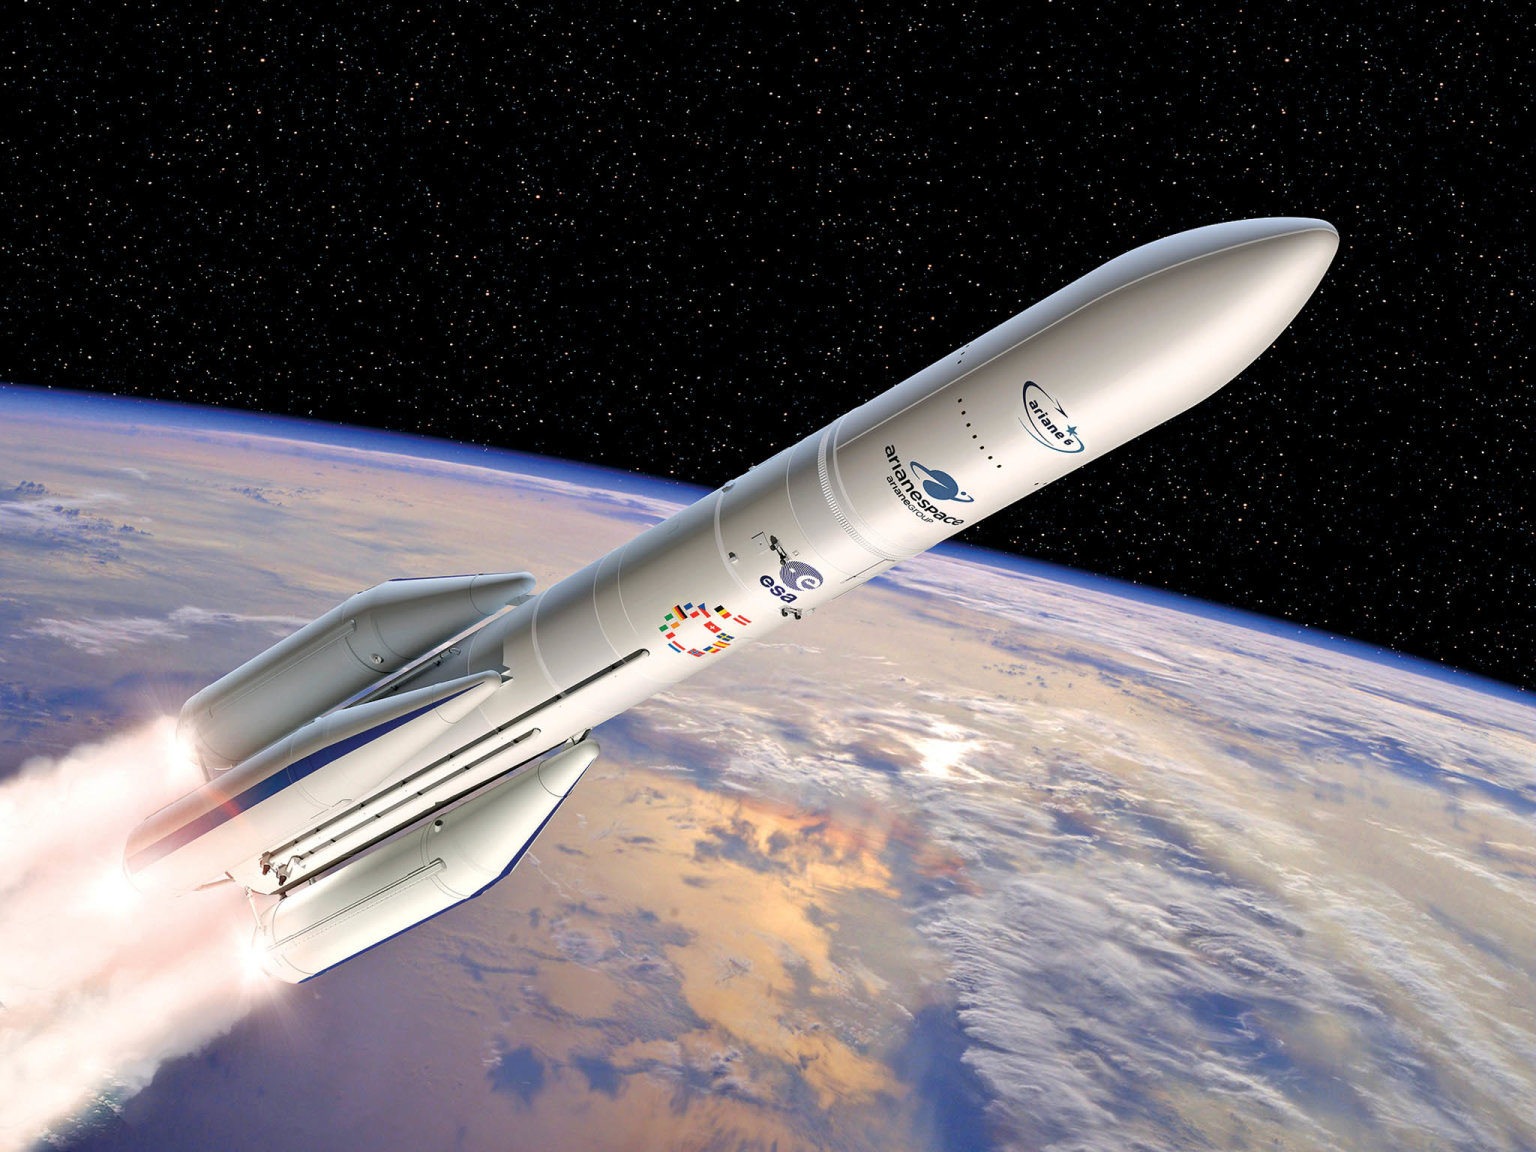 Klatovská firma ATC Space dodává souèásti pro rakety Ariane 6, na nìž do budoucna spoléhá Evropská kosmická agentura.